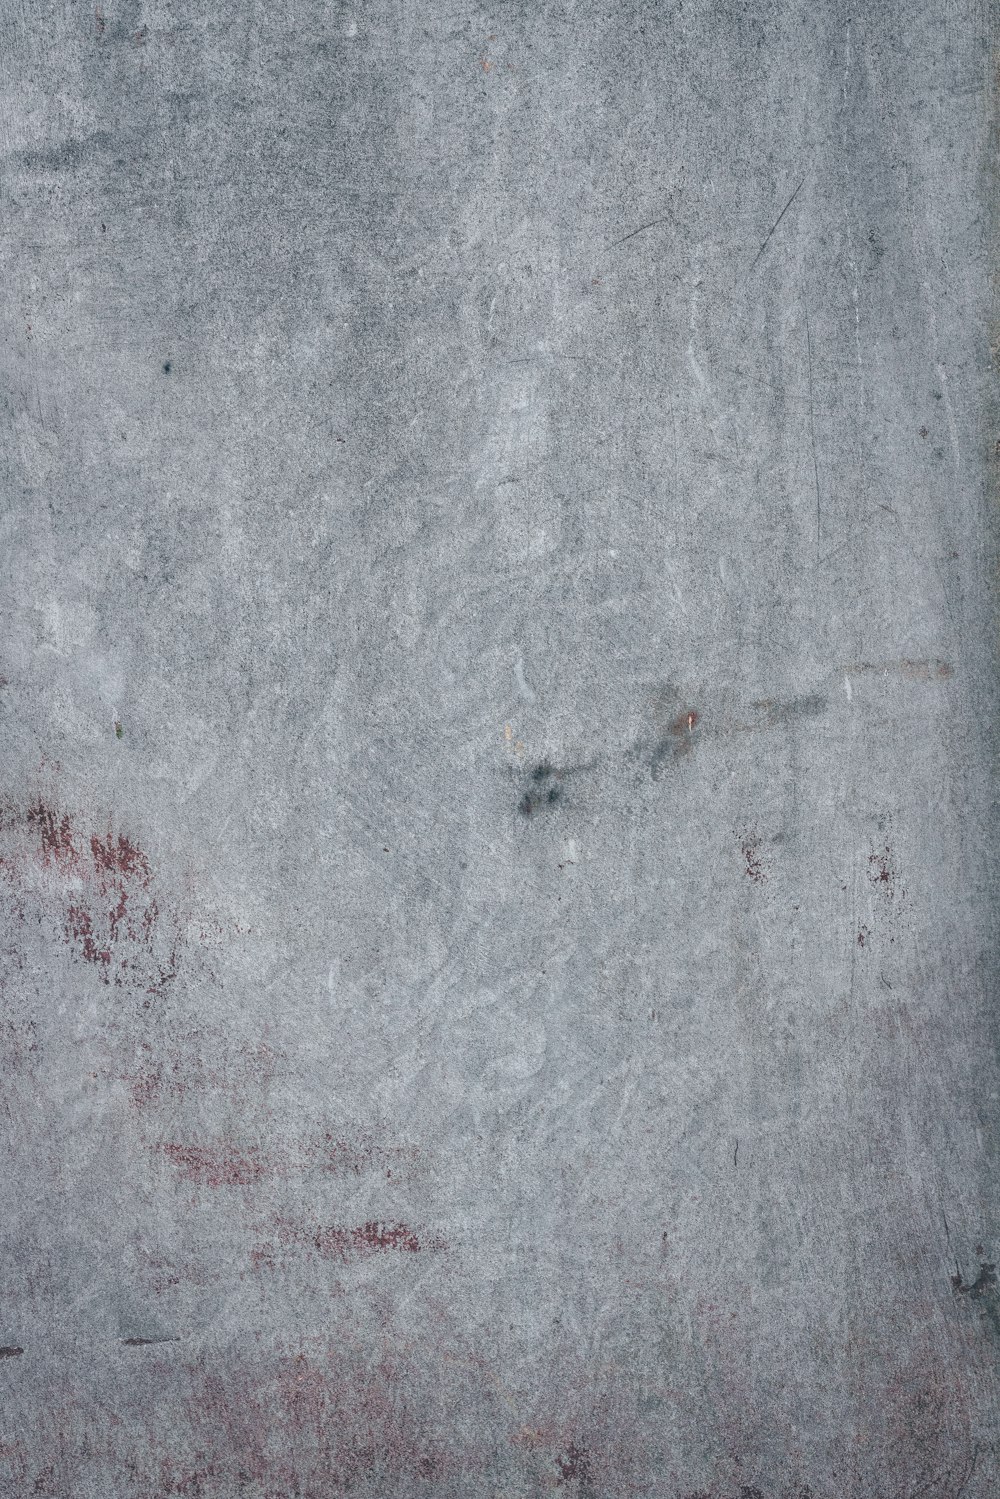 um close up de uma superfície de cimento com manchas vermelhas